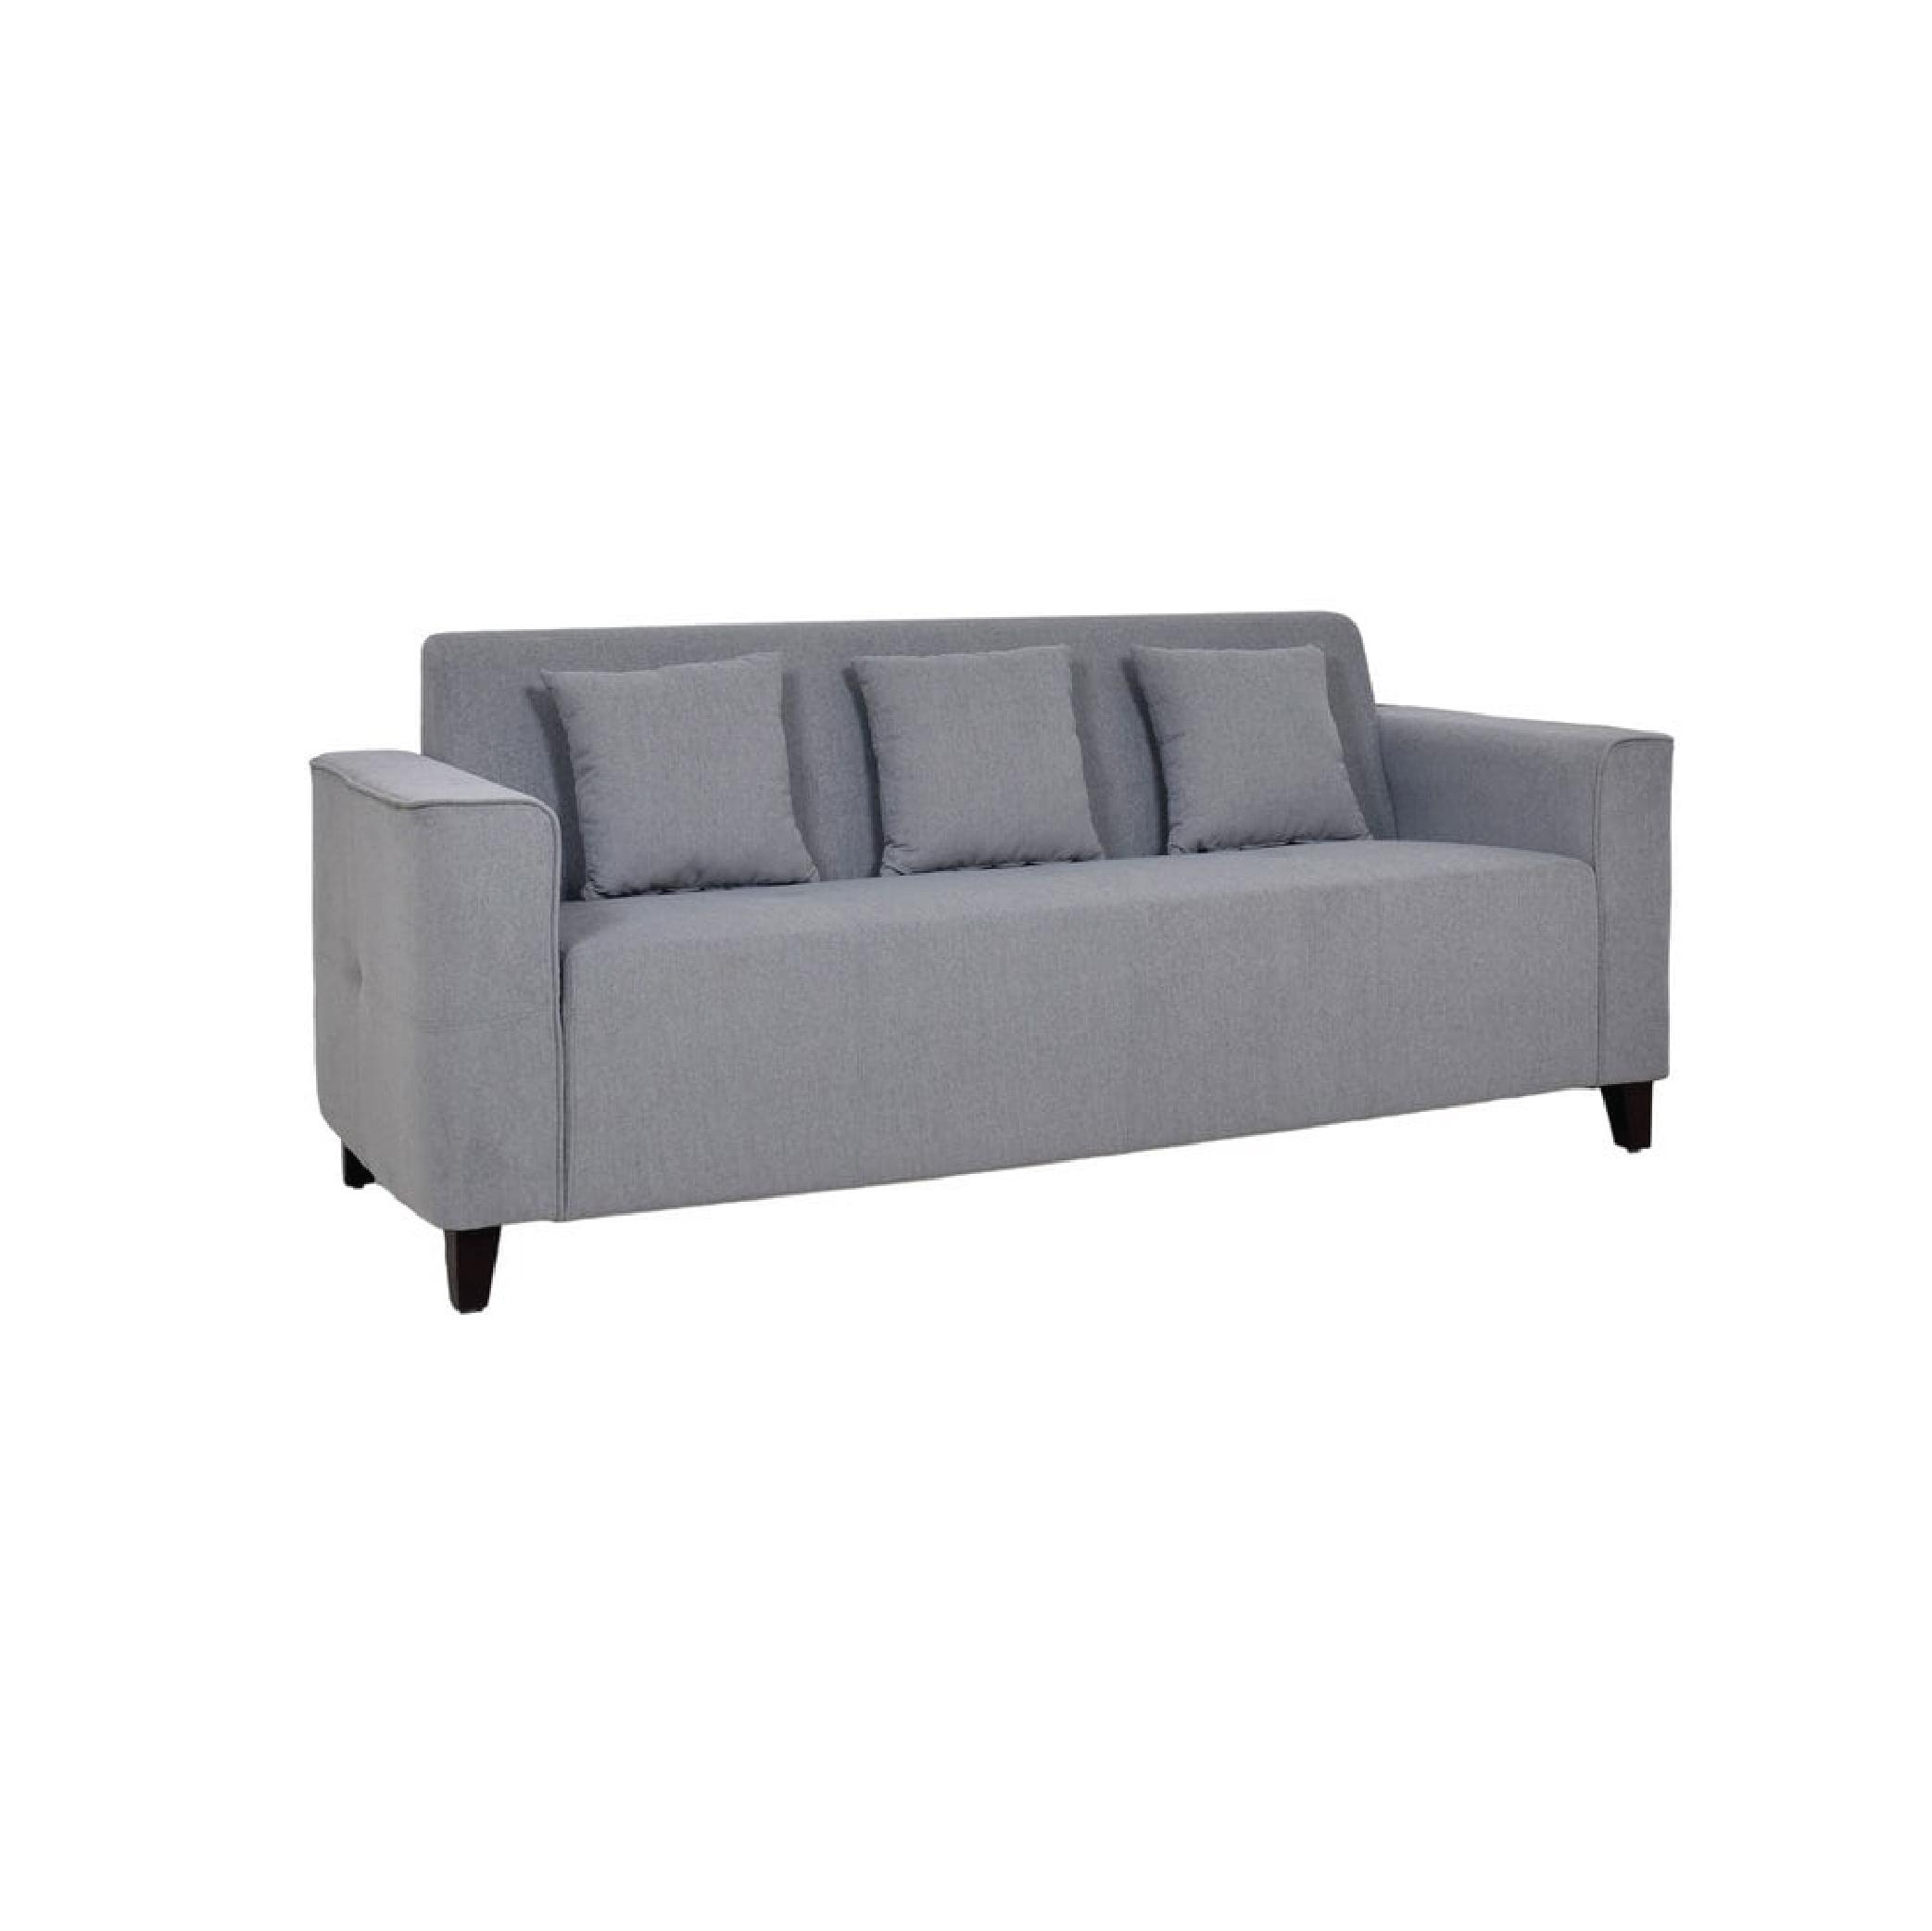 Faenza Three Seater Sofa in Ash Grey Colour